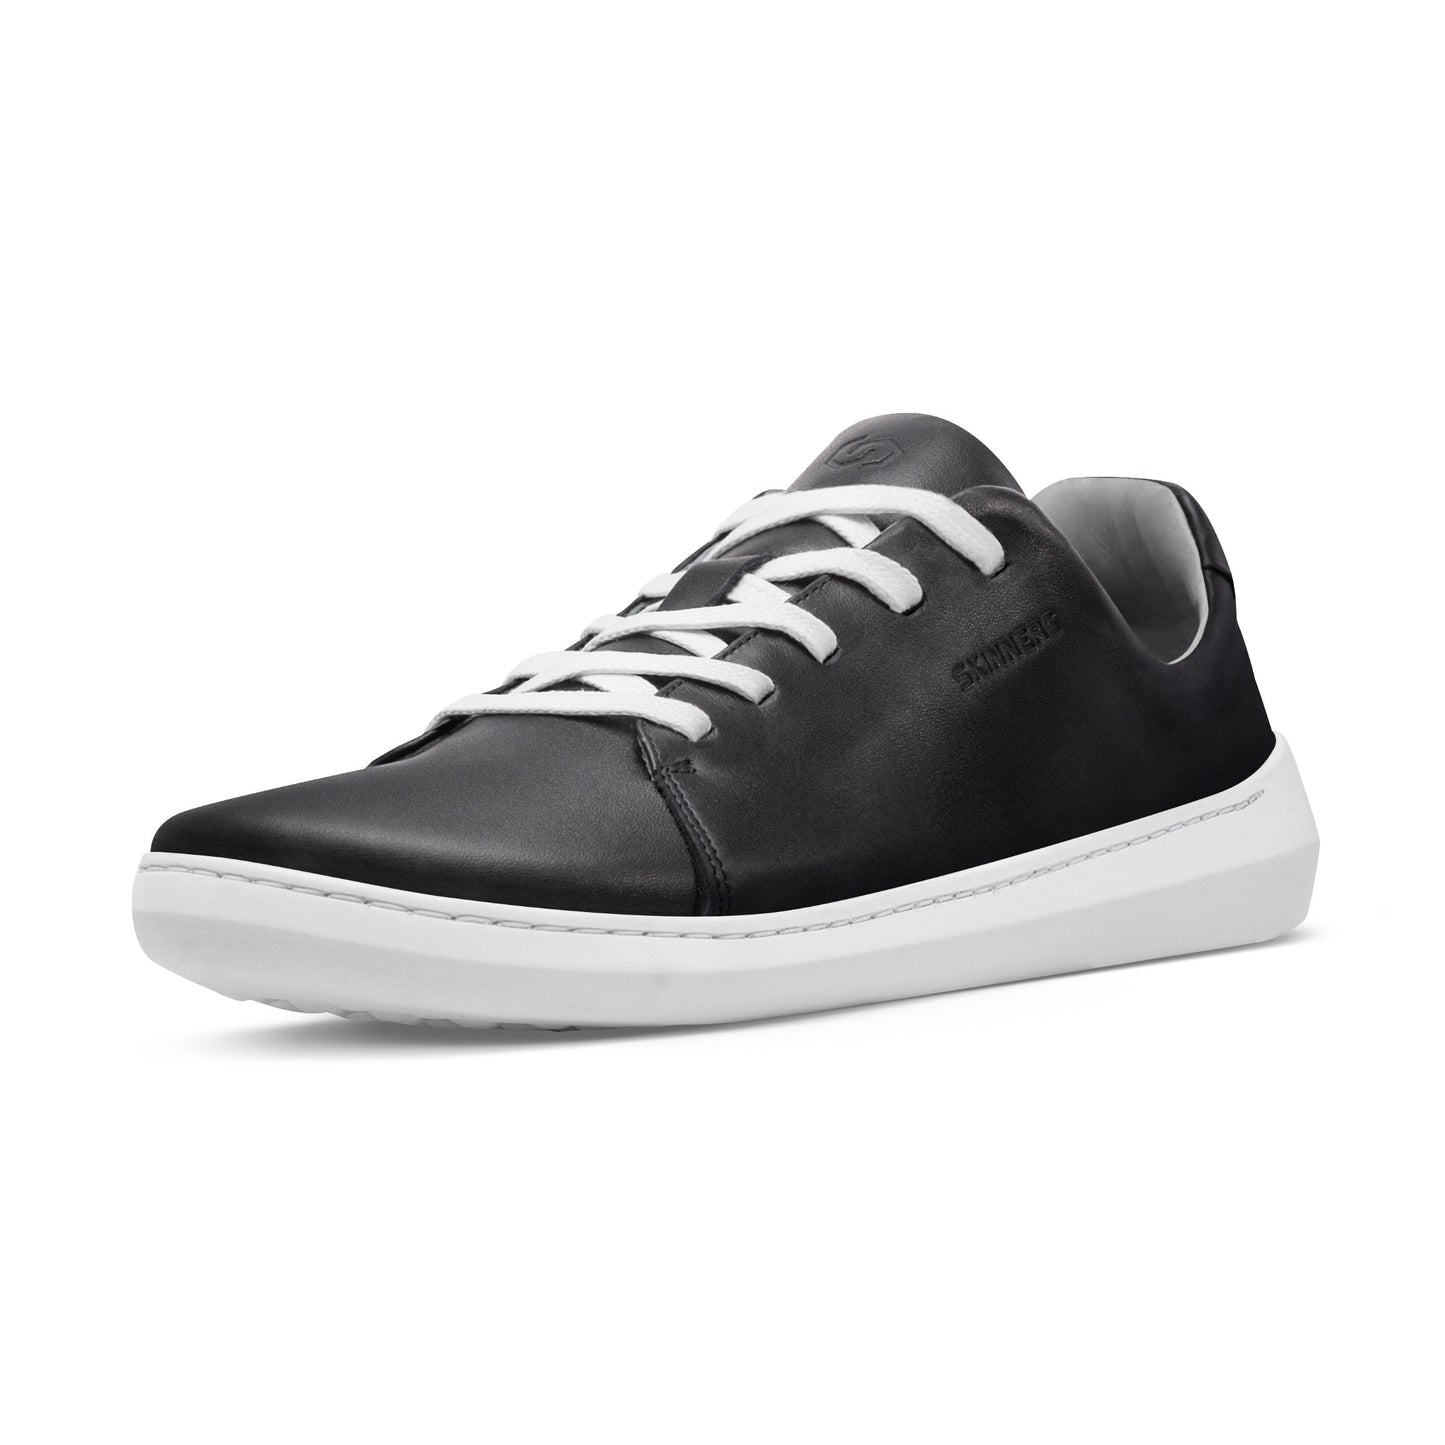 Mærkbare Walker barfods sneakers til kvinder og mænd i farven black / white, vinklet